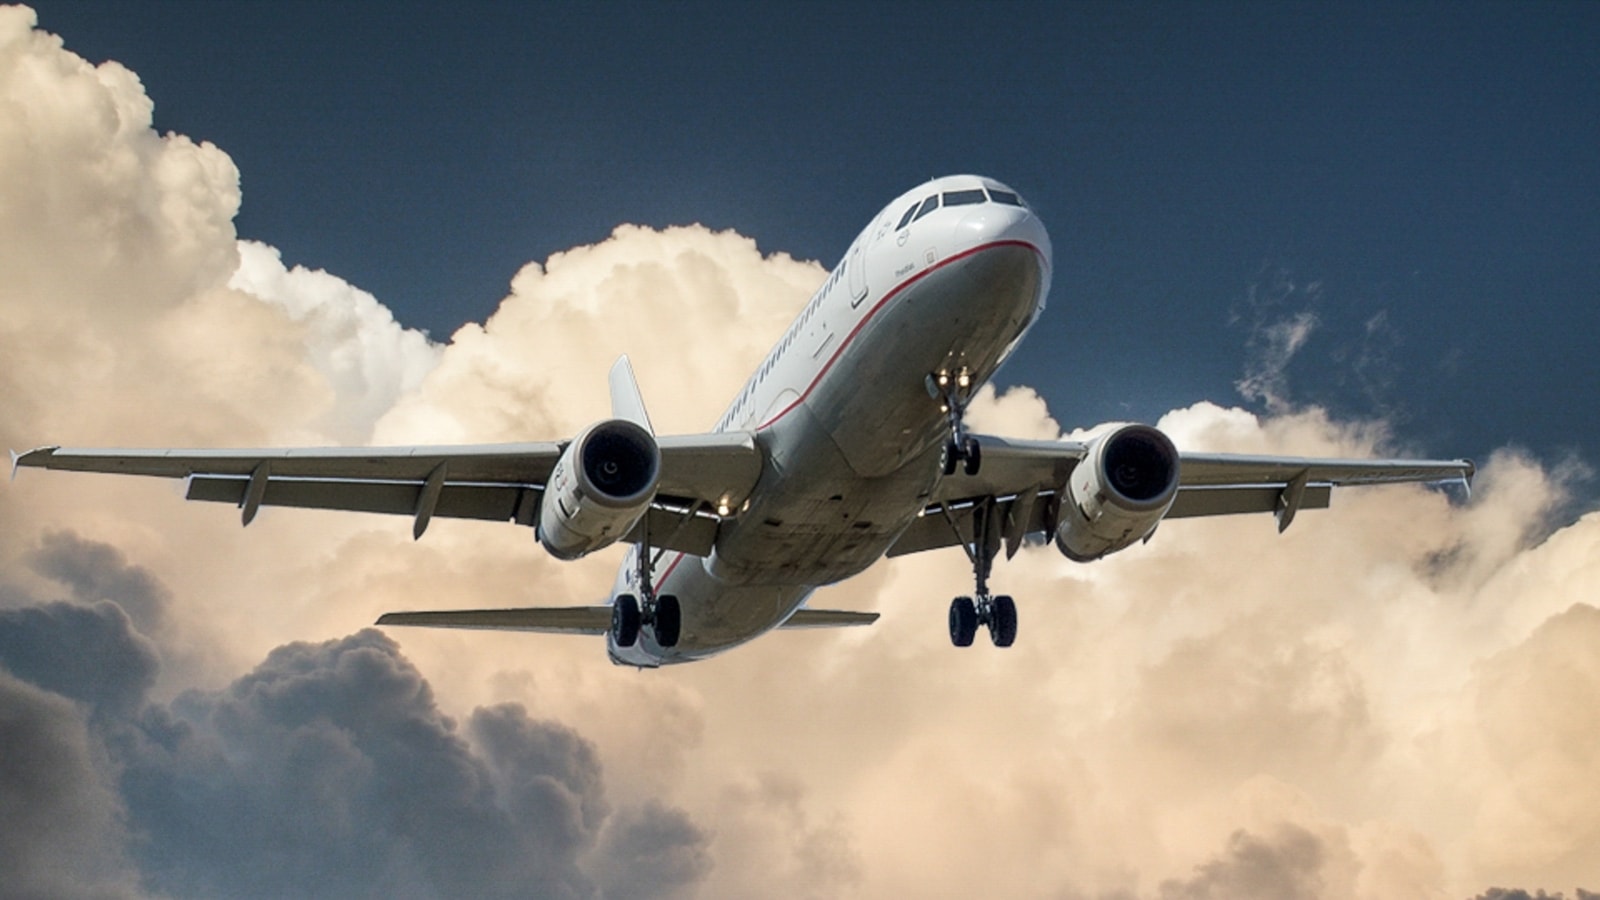 Caracas en Venezuela y Doha en Qatar prometen vuelos directos a partir de octubre |  Viaje